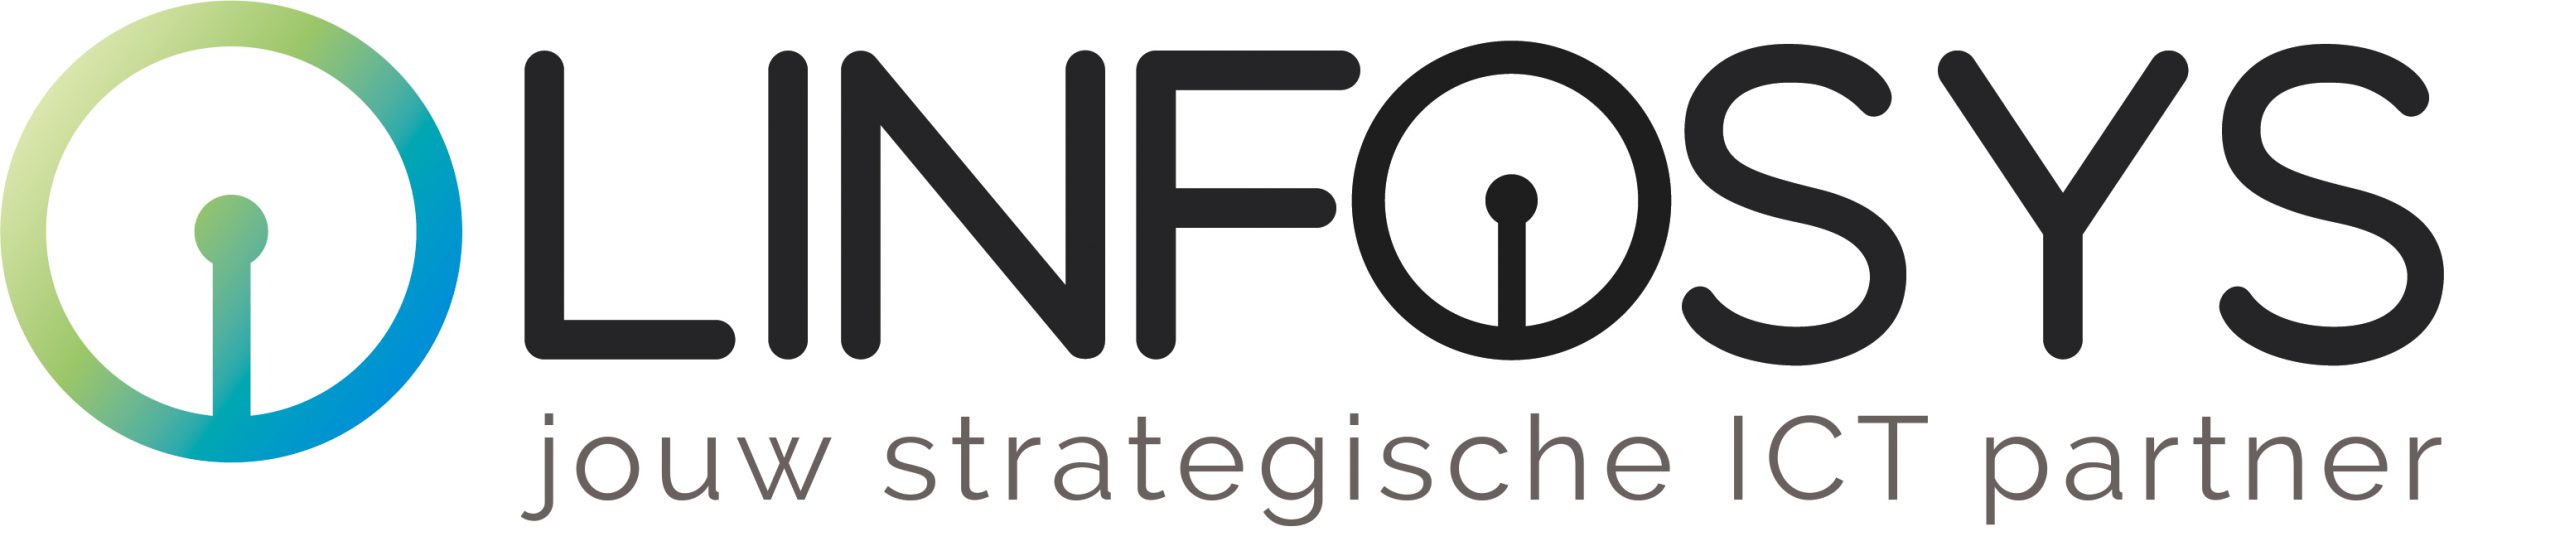 Linfosys logo (jouw strategische partner uitgelijnd 2) EPS